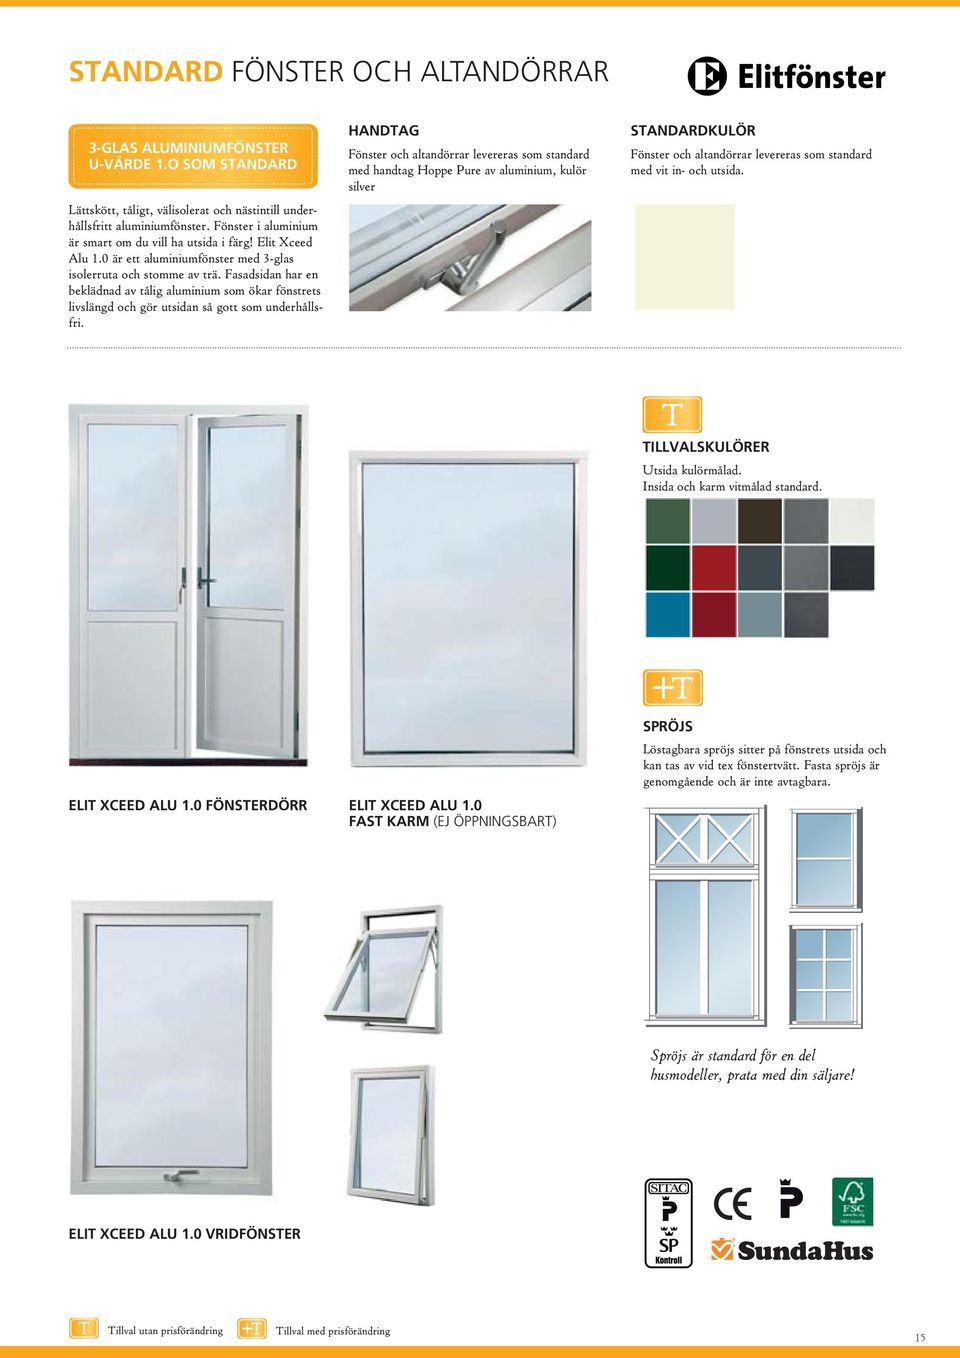 Fasadsidan har en beklädnad av tålig aluminium som ökar fönstrets livslängd och gör utsidan så gott som underhållsfri.